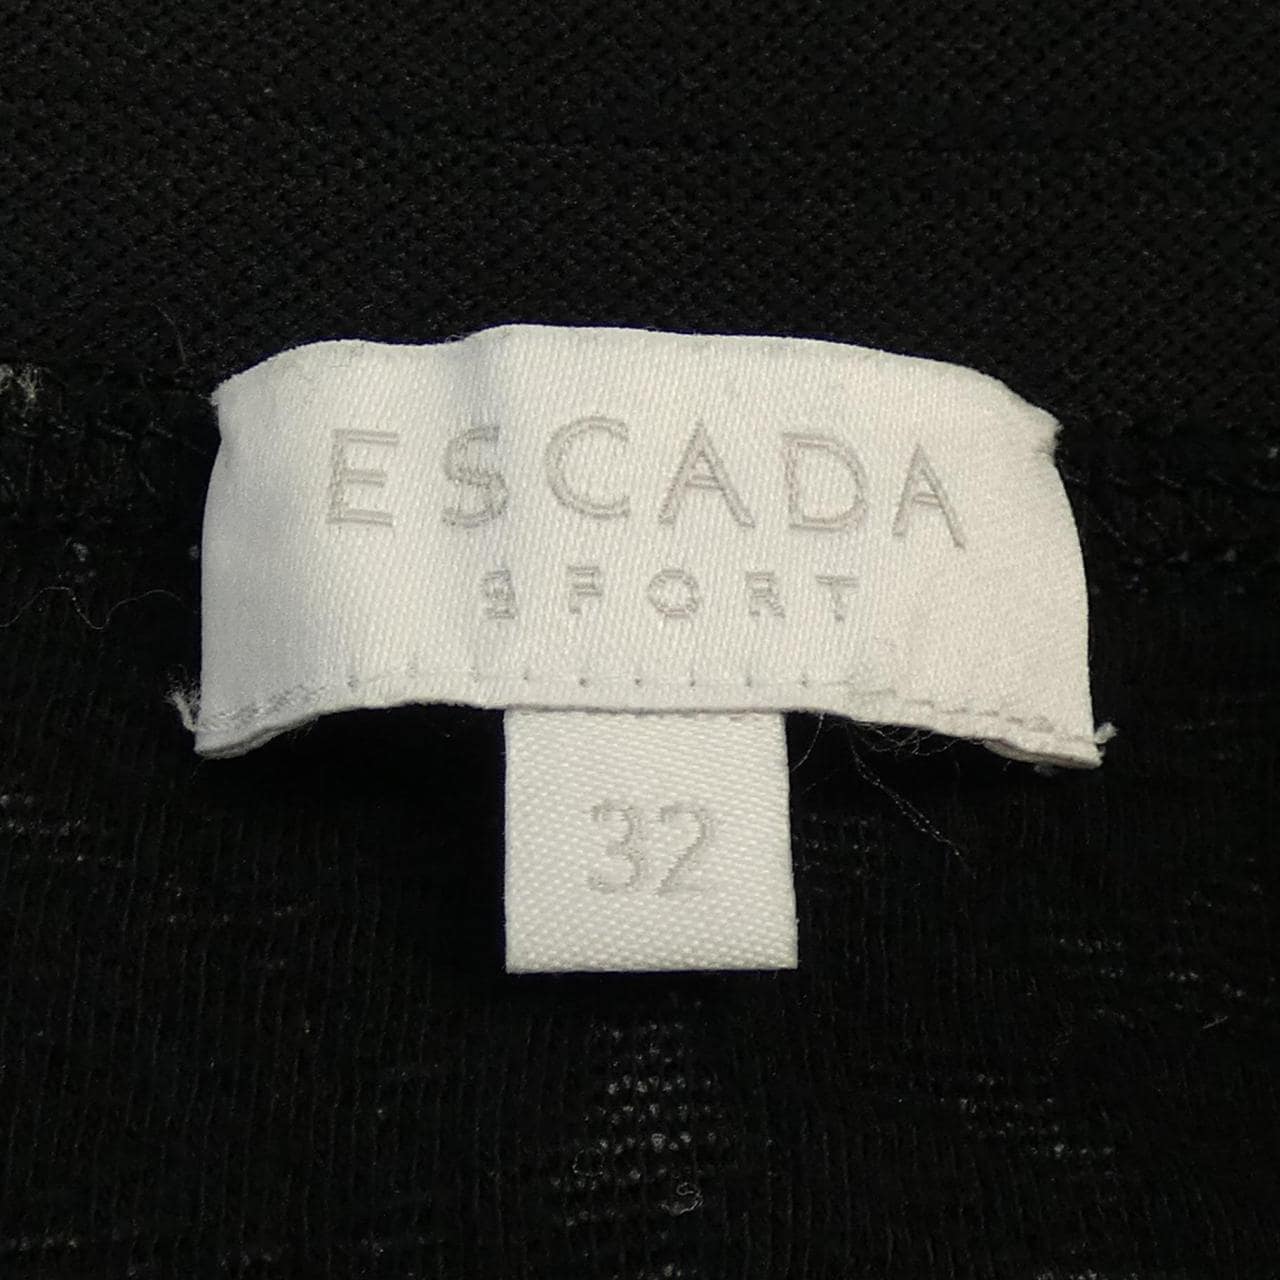 エスカーダ ESCADA スカート